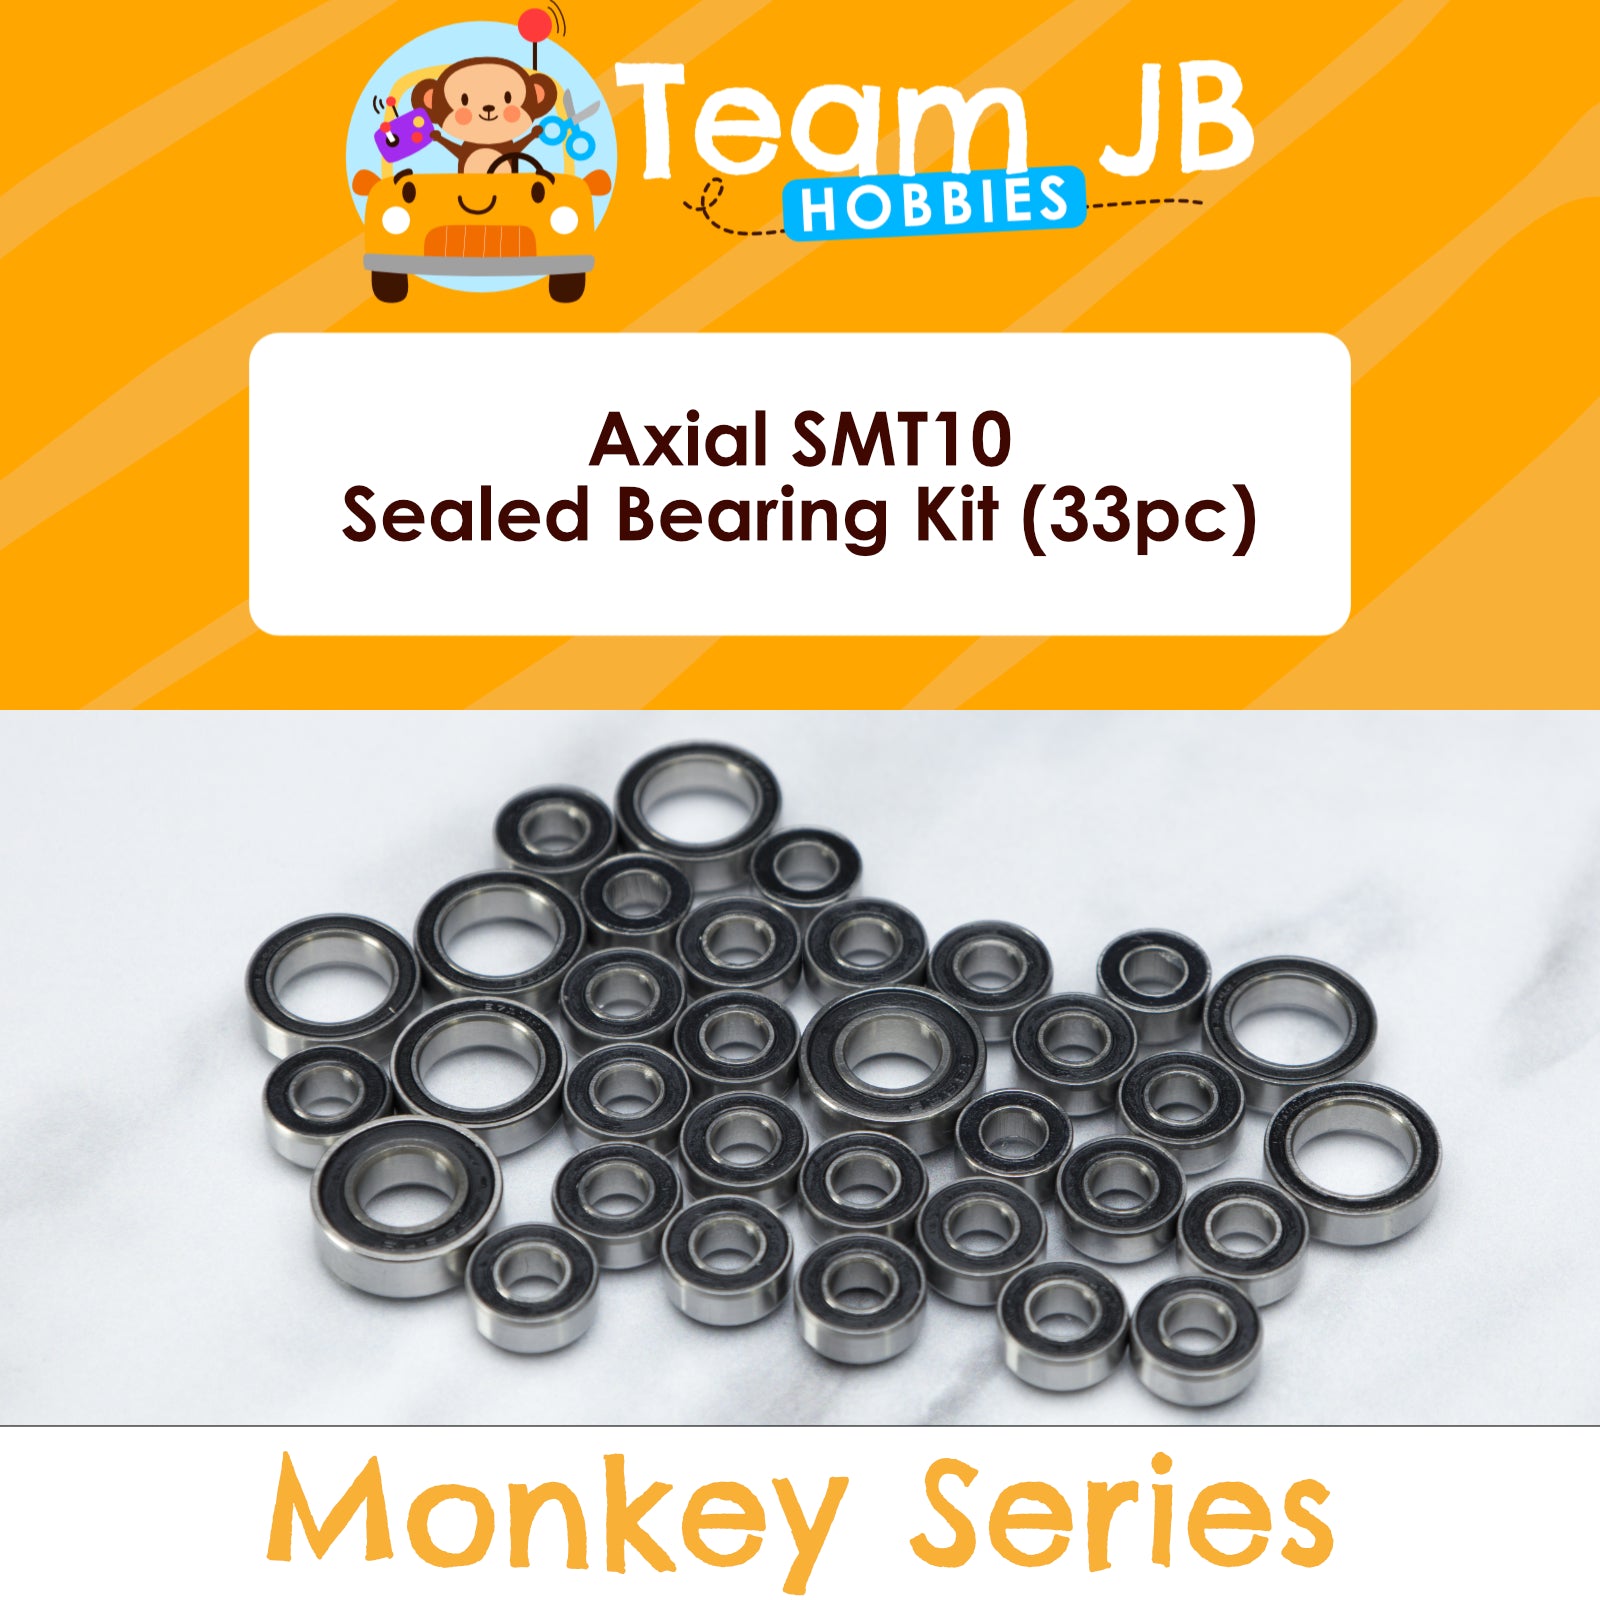 Axial SMT10 - Sealed Bearing Kit